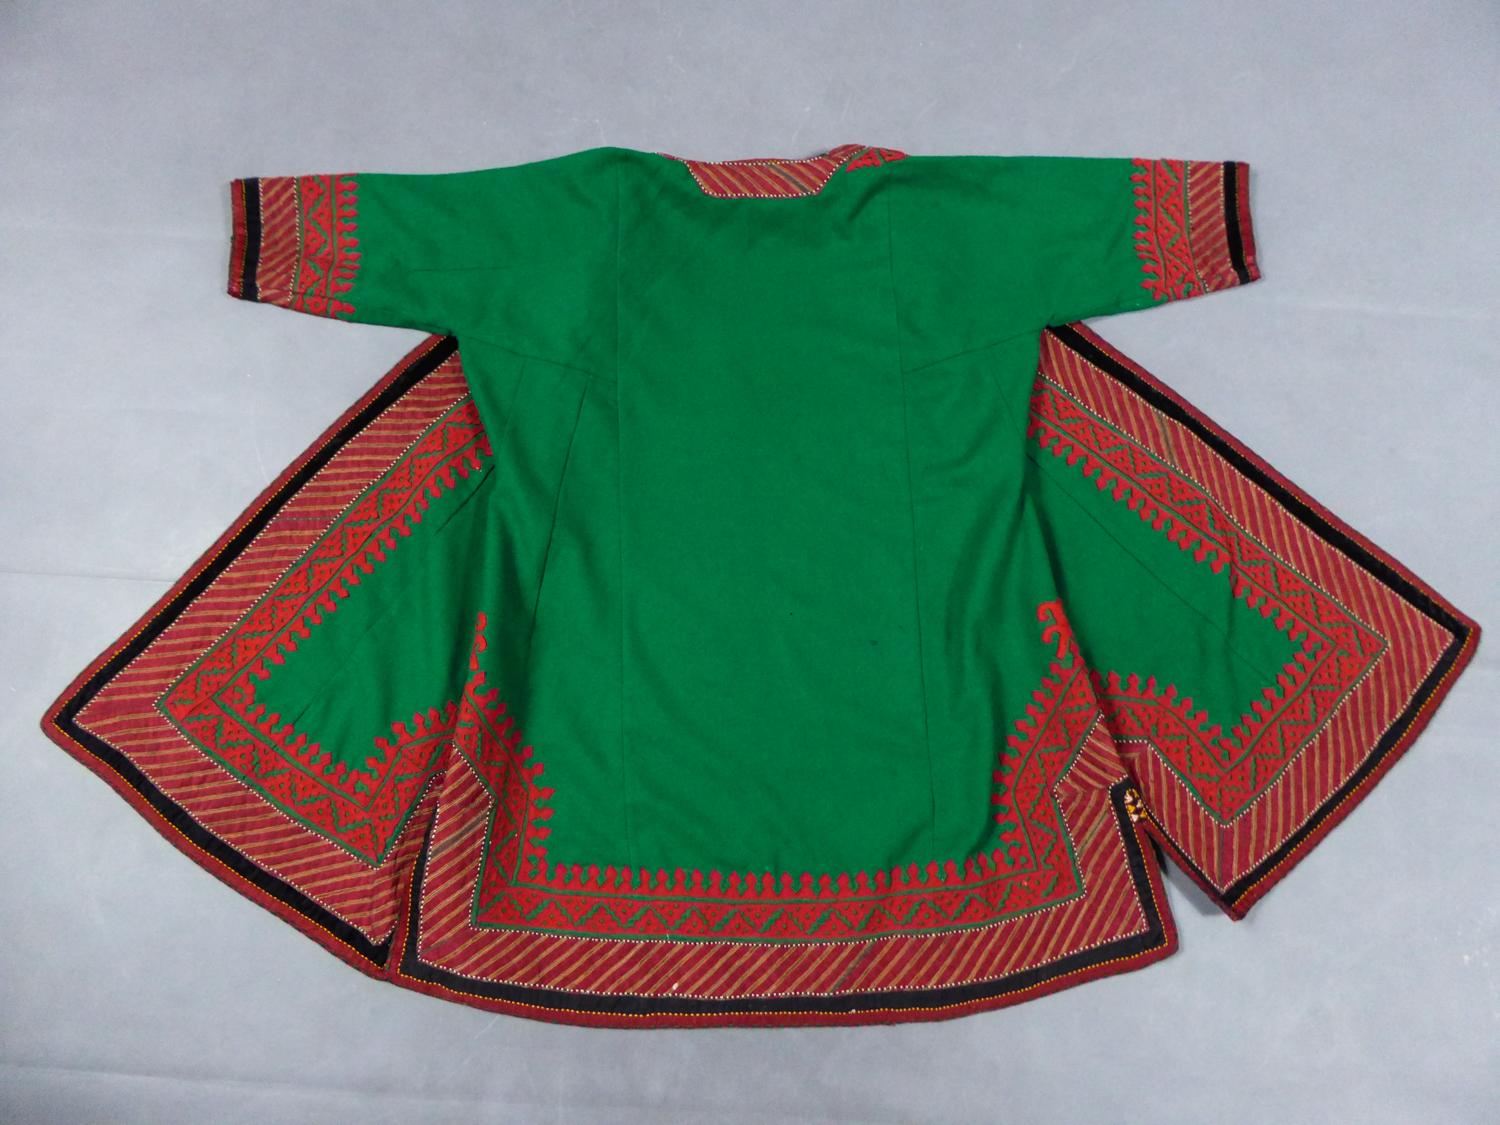 CIRCA 1950
Turkmenistan

Mantel oder Kaftan aus grünem Wollfilz aus Istanbul und aus Turkmenistan aus den Jahren 1950/1960. Kaftan mit Dreiviertelärmeln und beidseitigem Schlitz. Sehr schöne Arbeit mit ethnischen Motiven in rot platzierter Wolle.